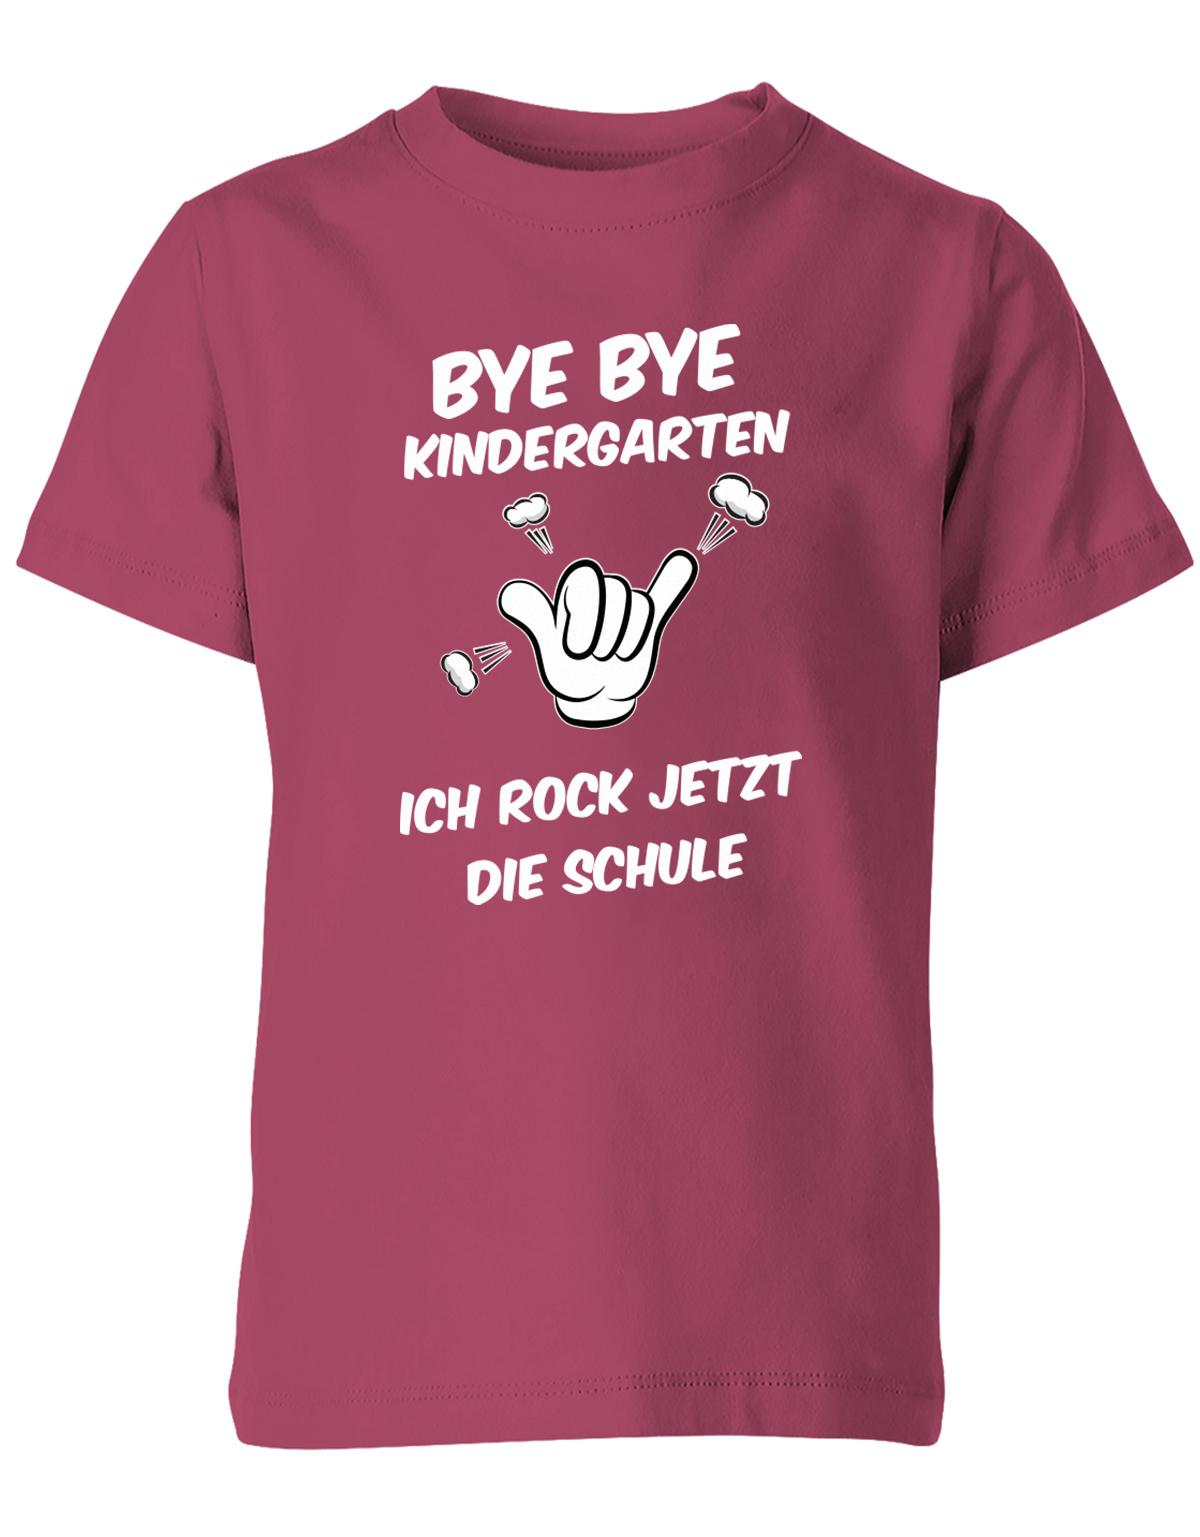 Bye bye Kindergarten ich rock jetzt die Schule - Einschulung - Kinder T-Shirt Sorbet